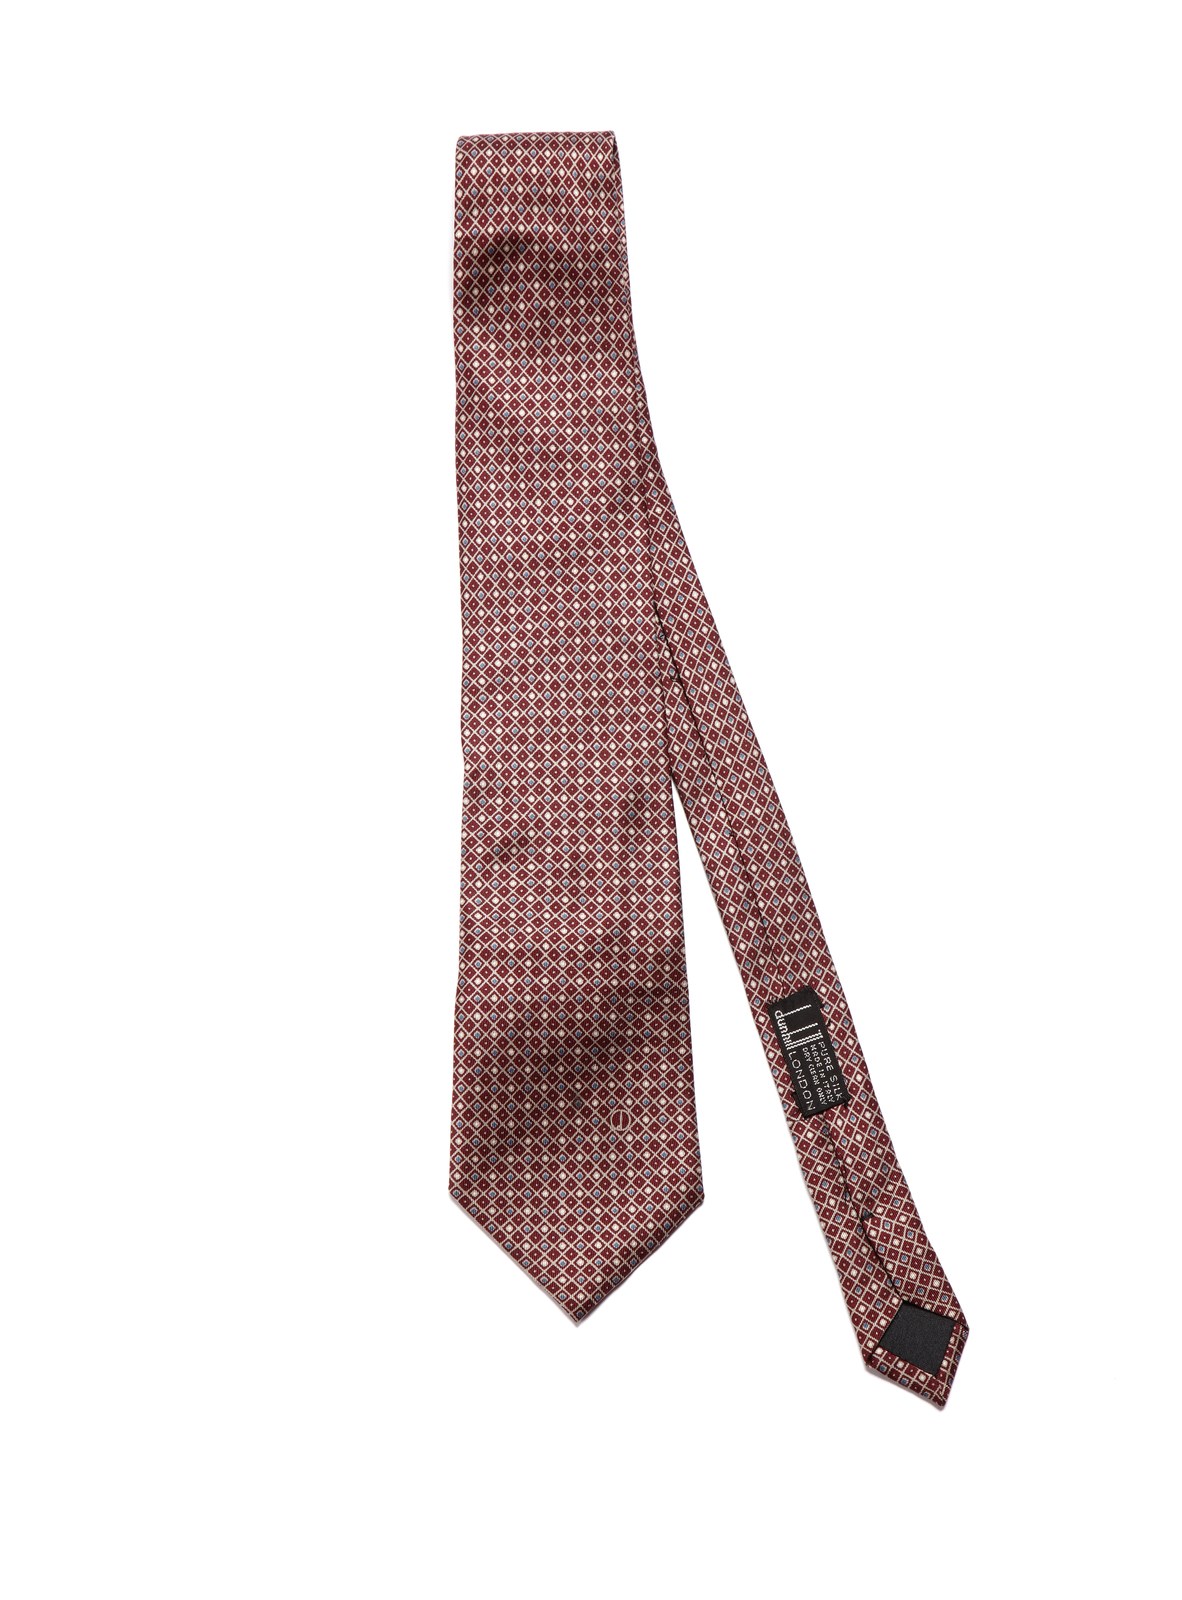 Cravatta in seta Dunhill London.  (Autore Non Identificato  )